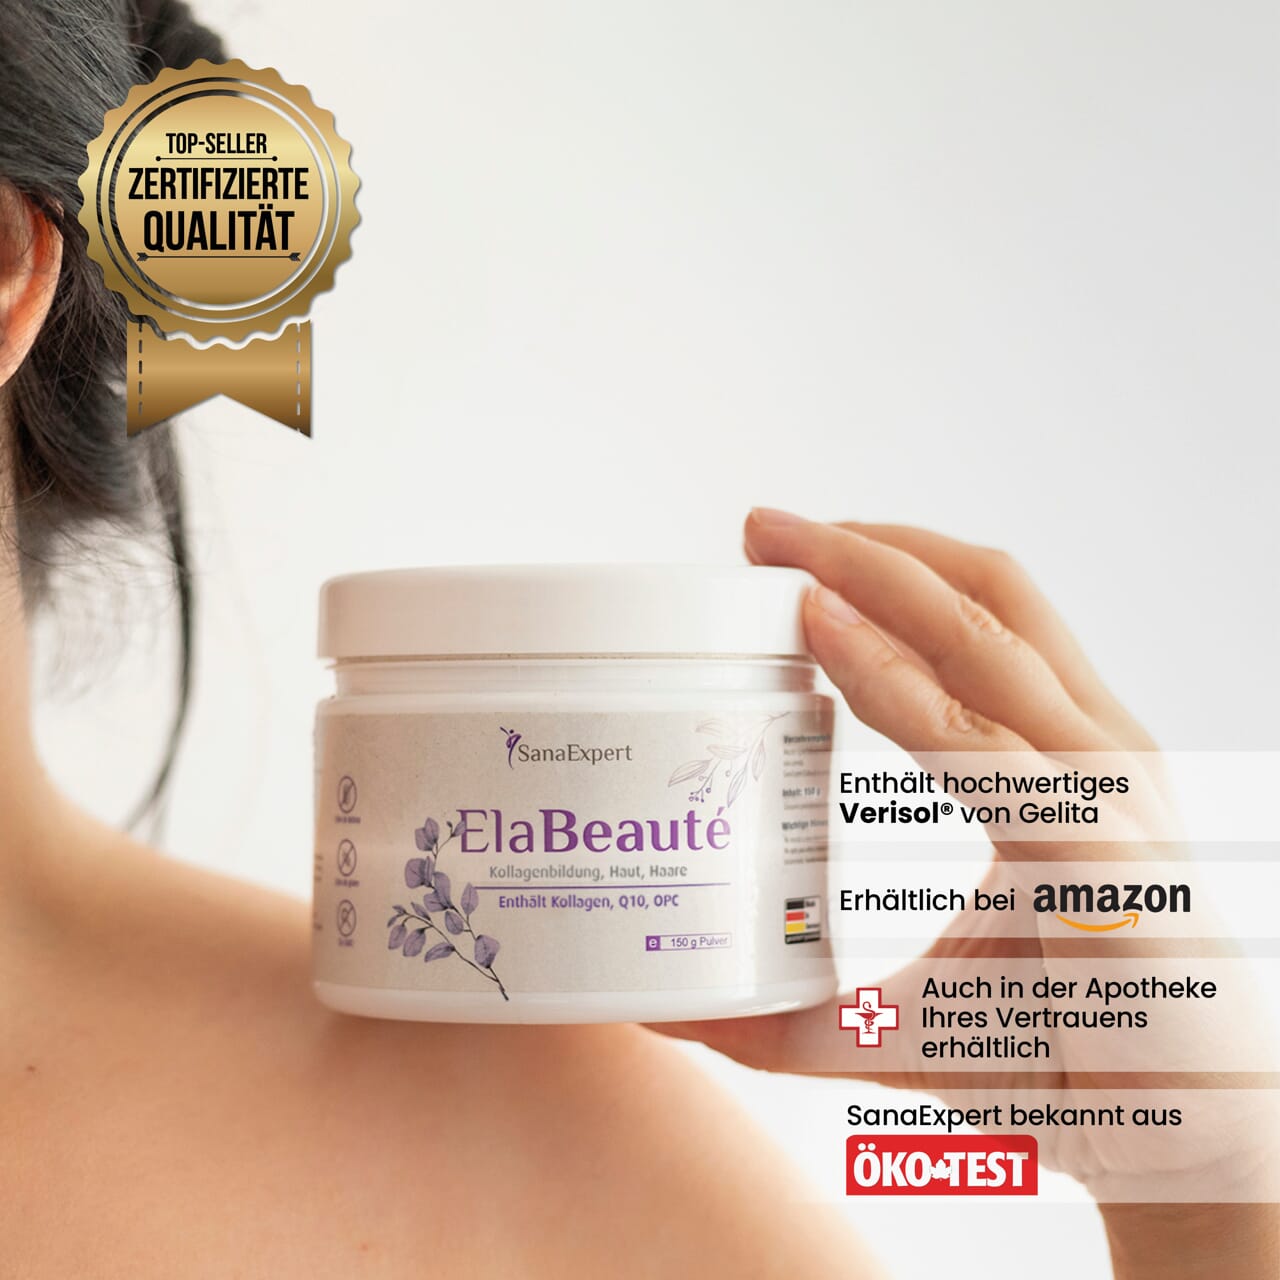 SanaExpert ElaBeauté, collagen, 150 grams